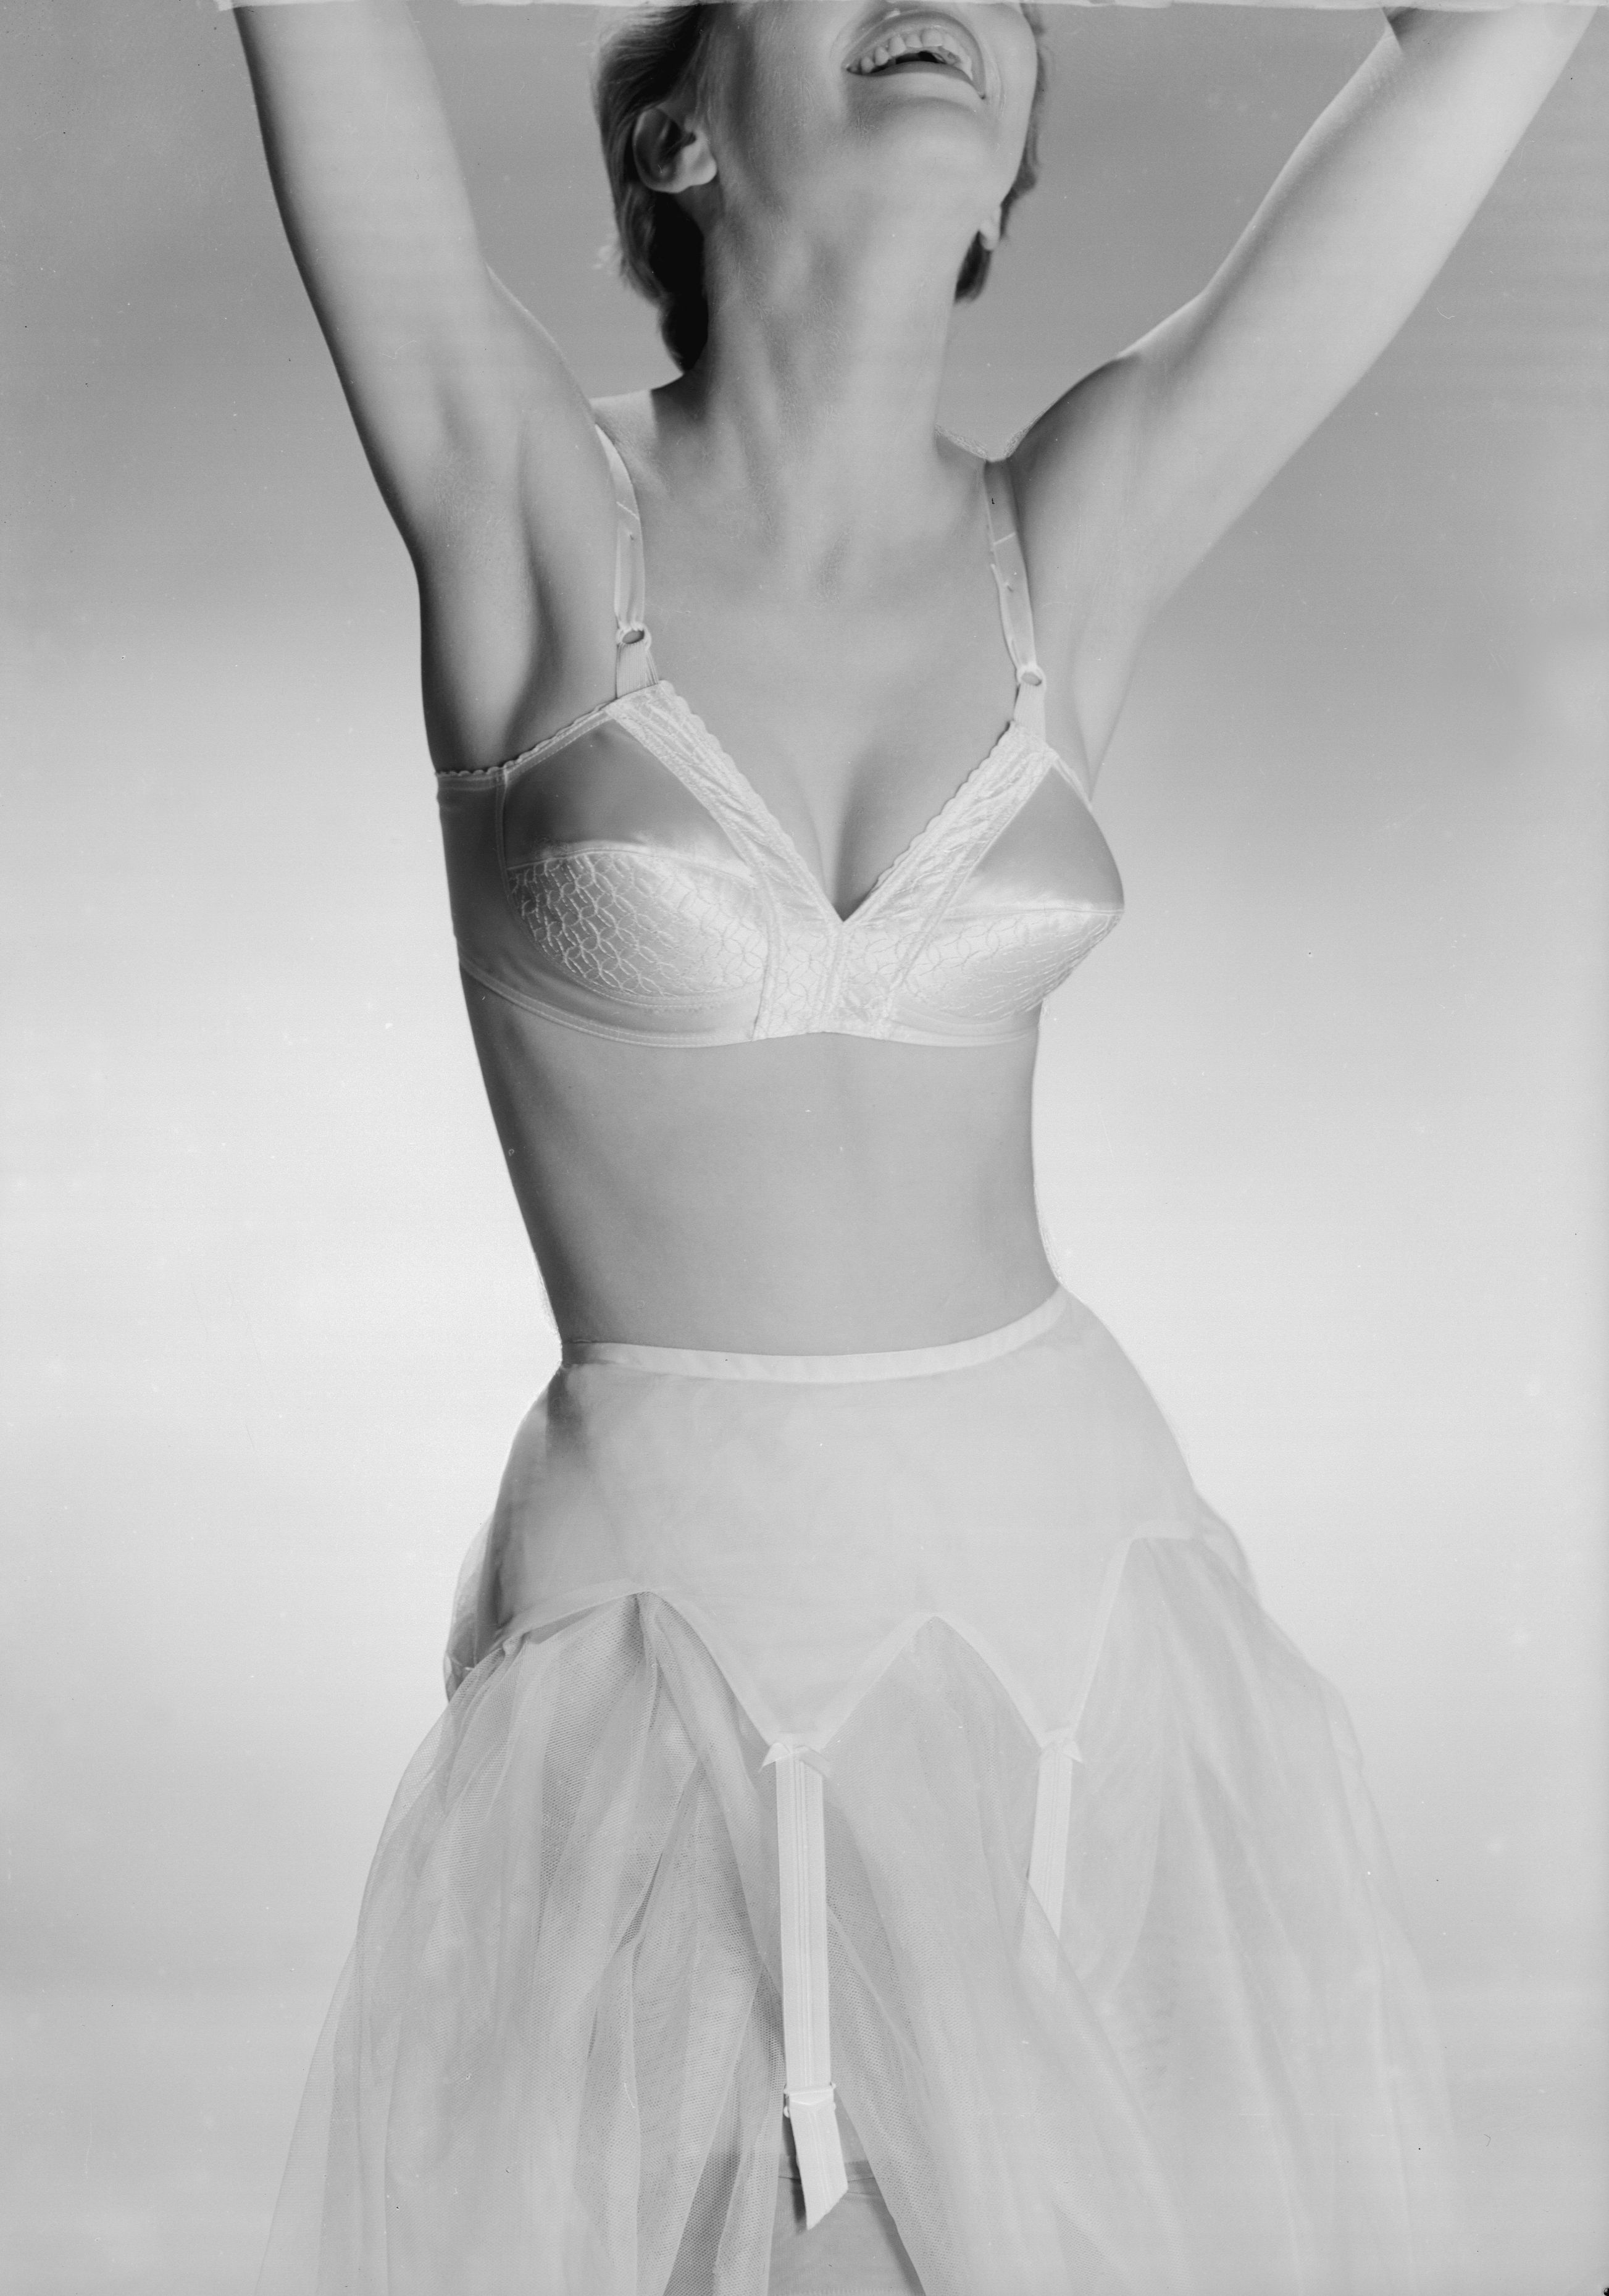 Pointy, cone bras!  Vintage bra, Bra, 1950s woman